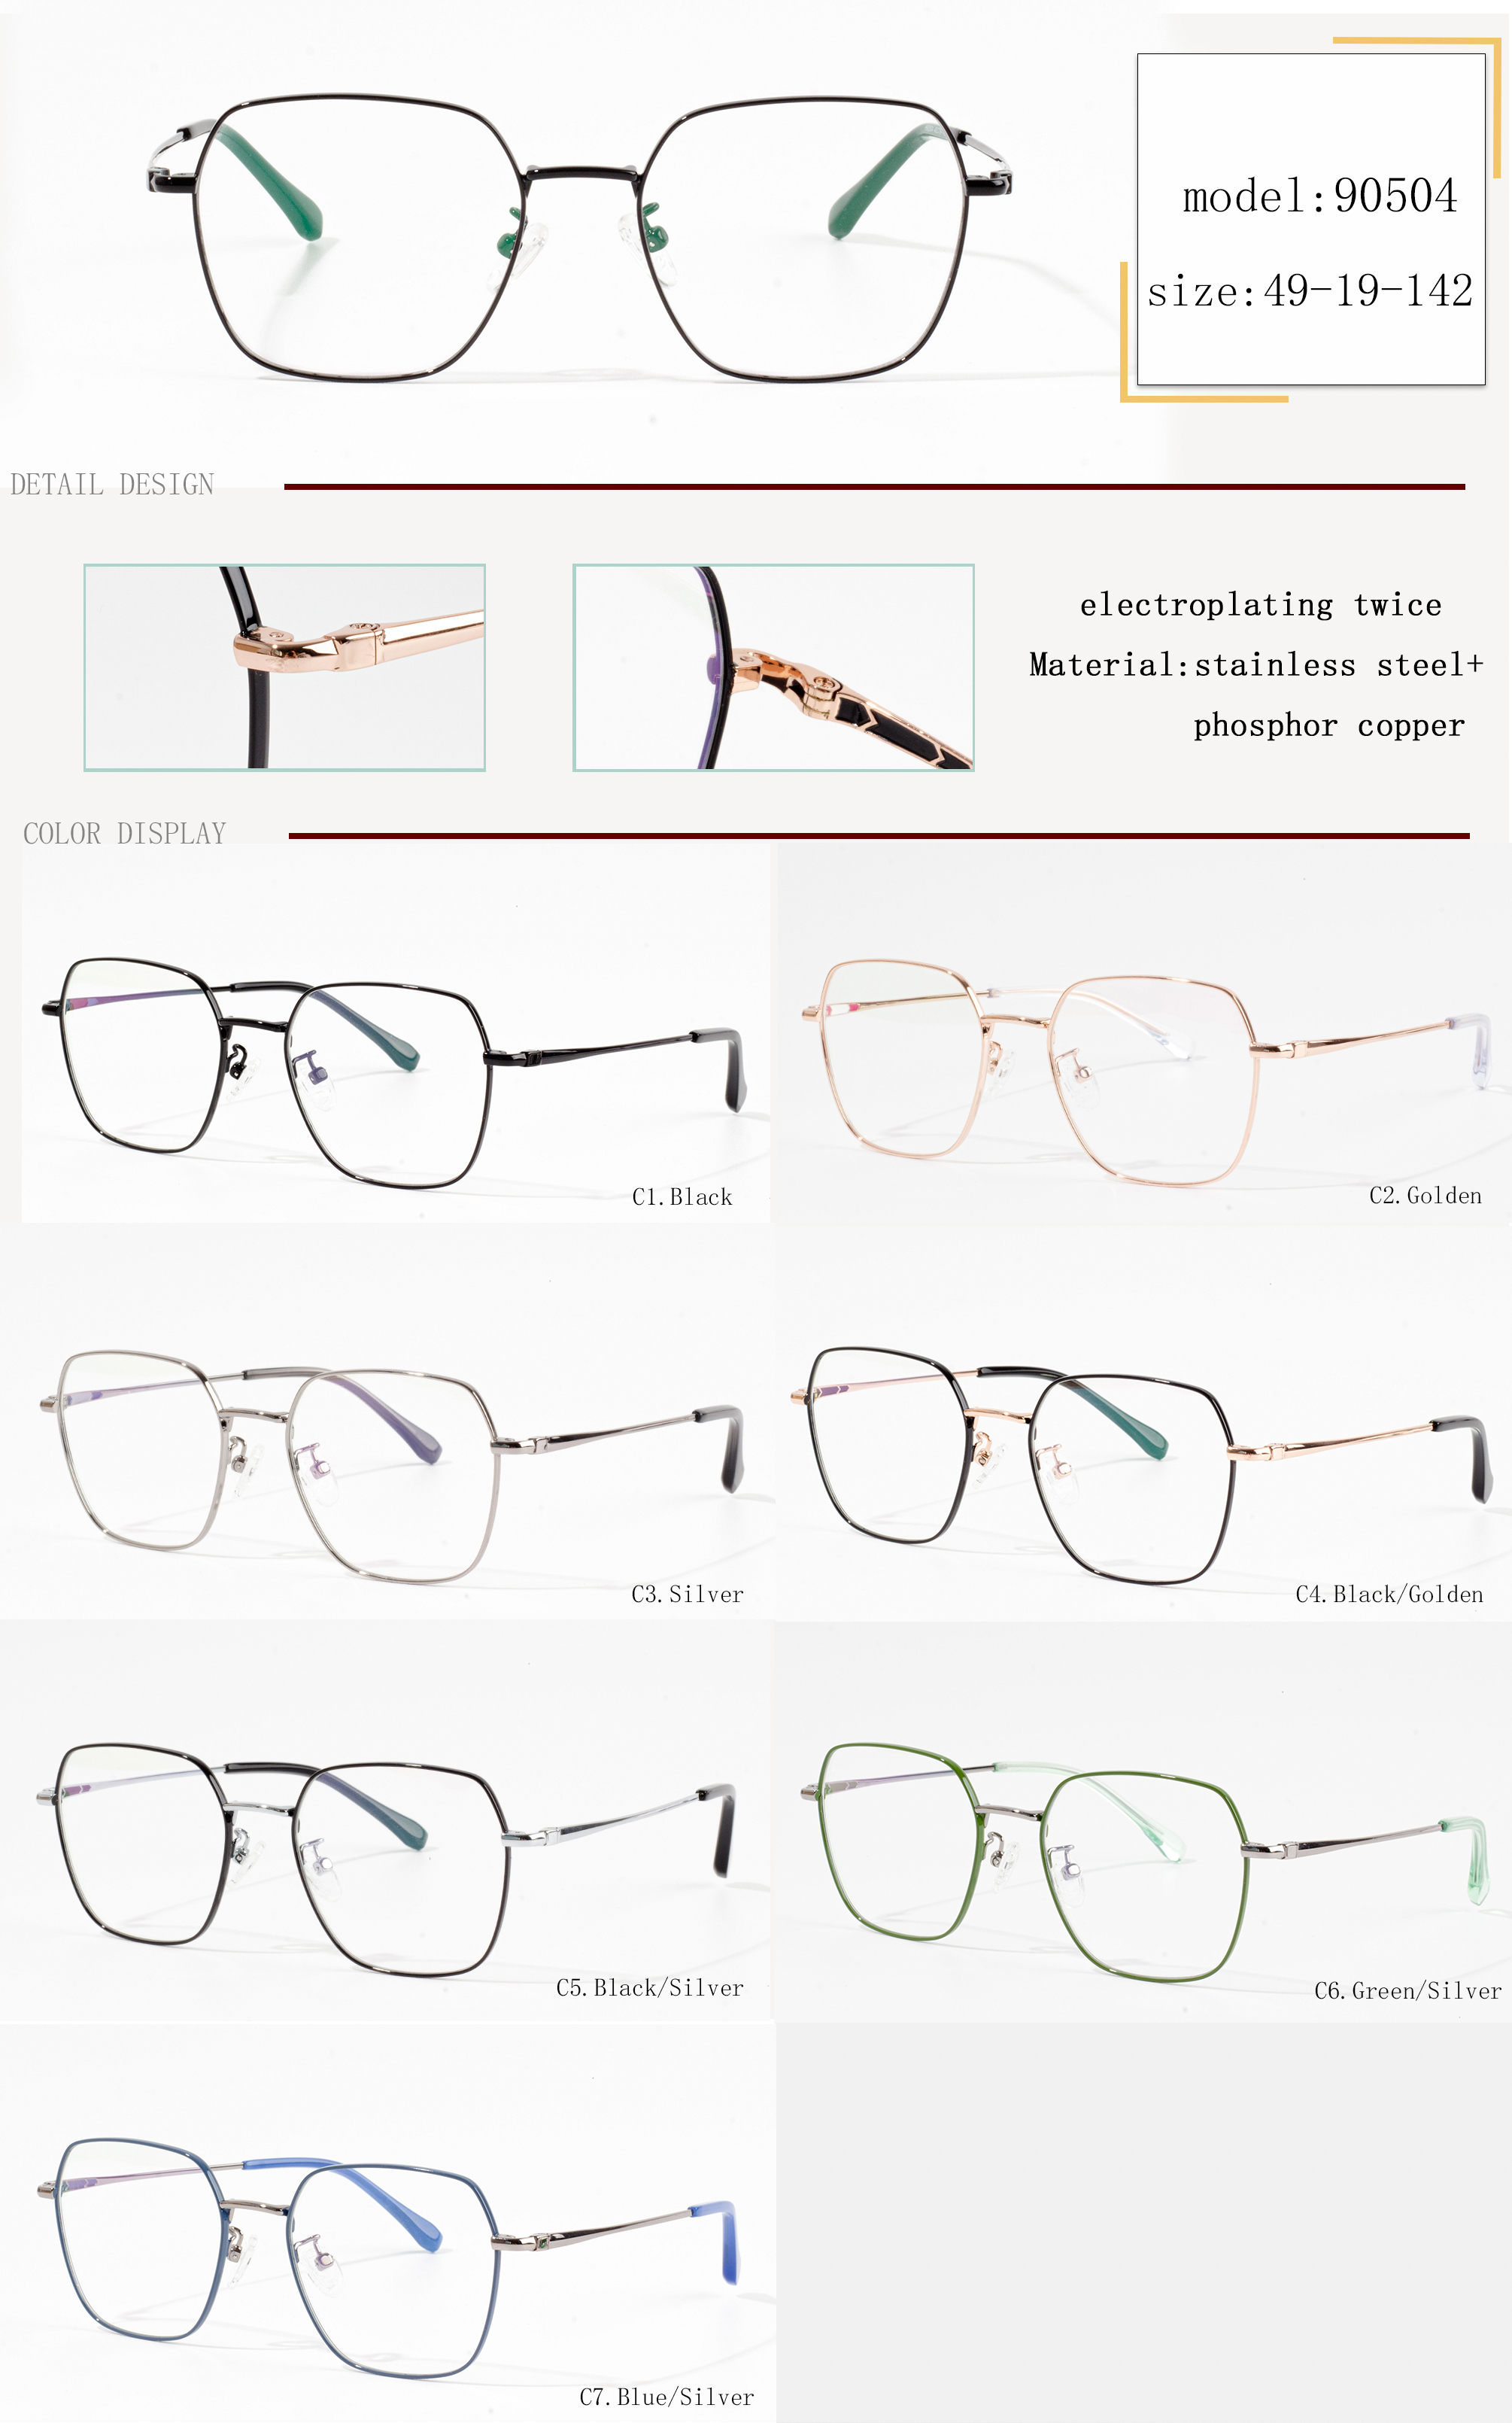 optimus frame manufacturers eyeglass